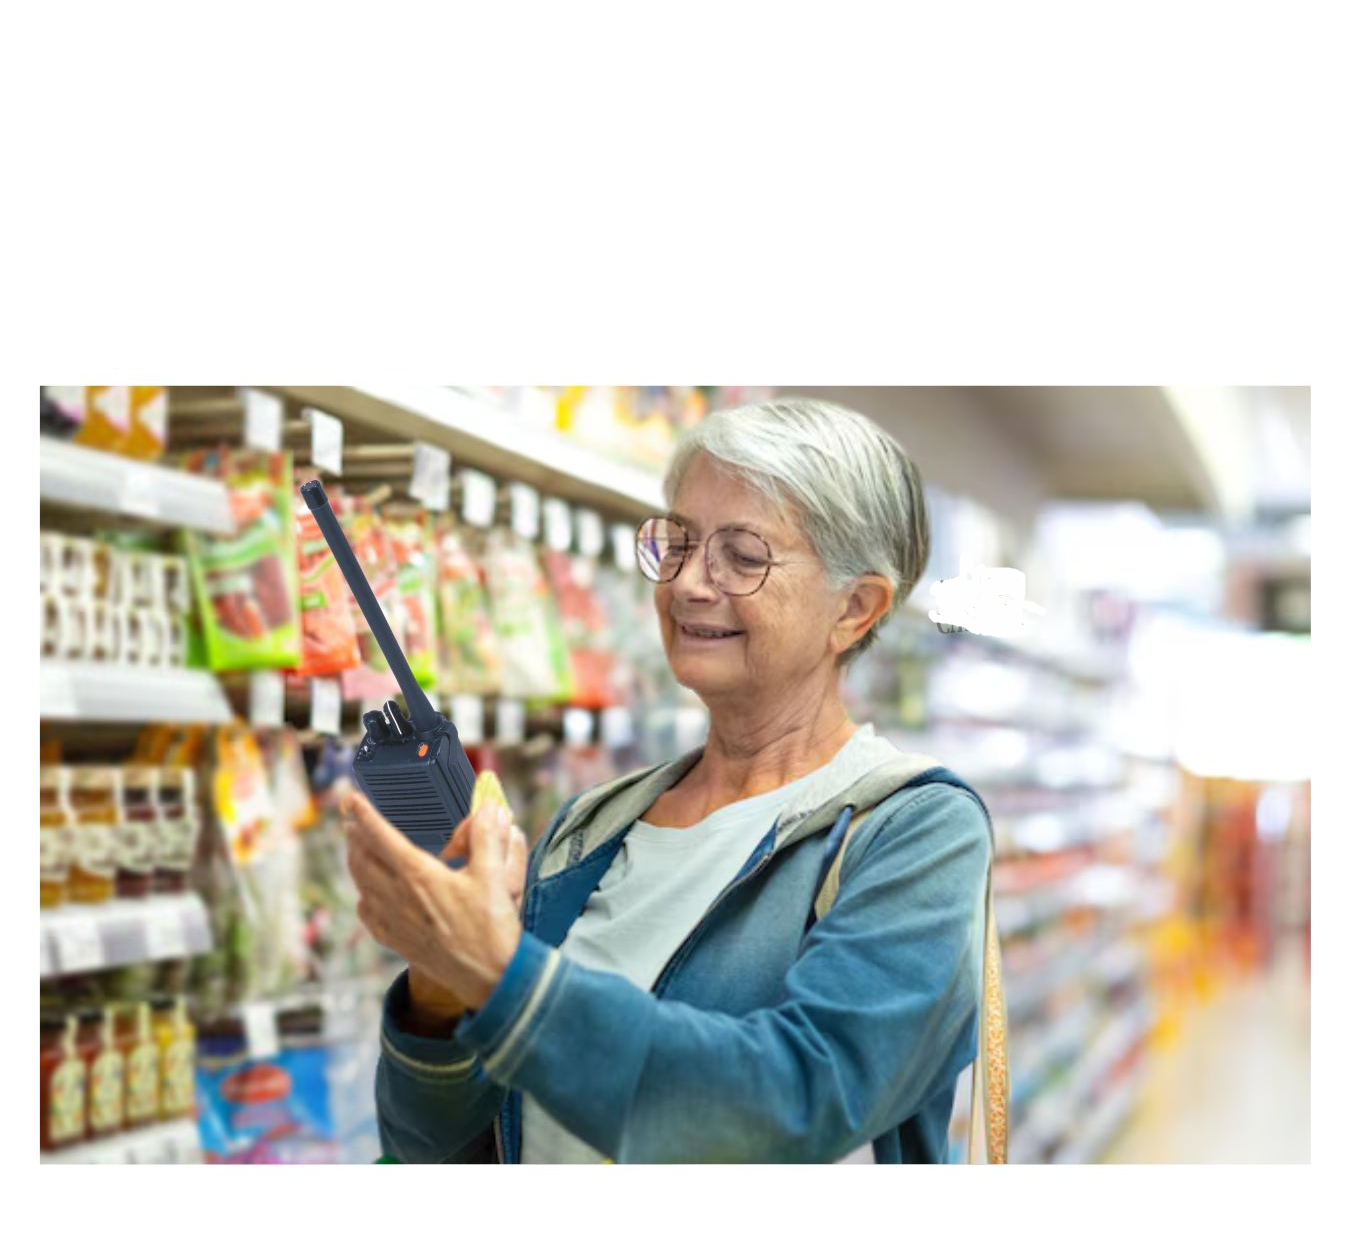 woman walkie talkie grocery store Blank Meme Template